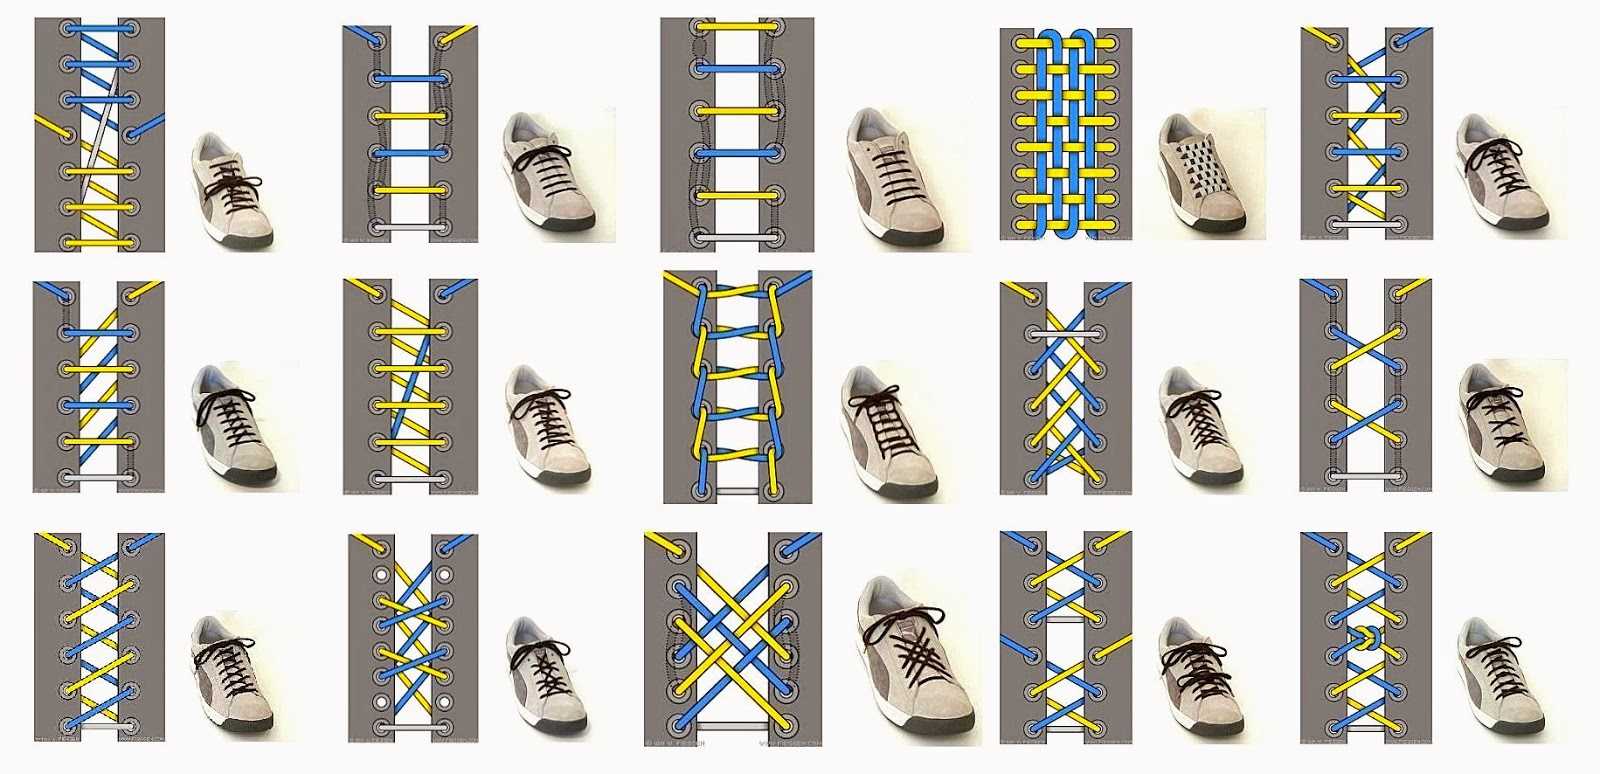 Как завязывать шнурки на ботинках и кедах | men's outfits